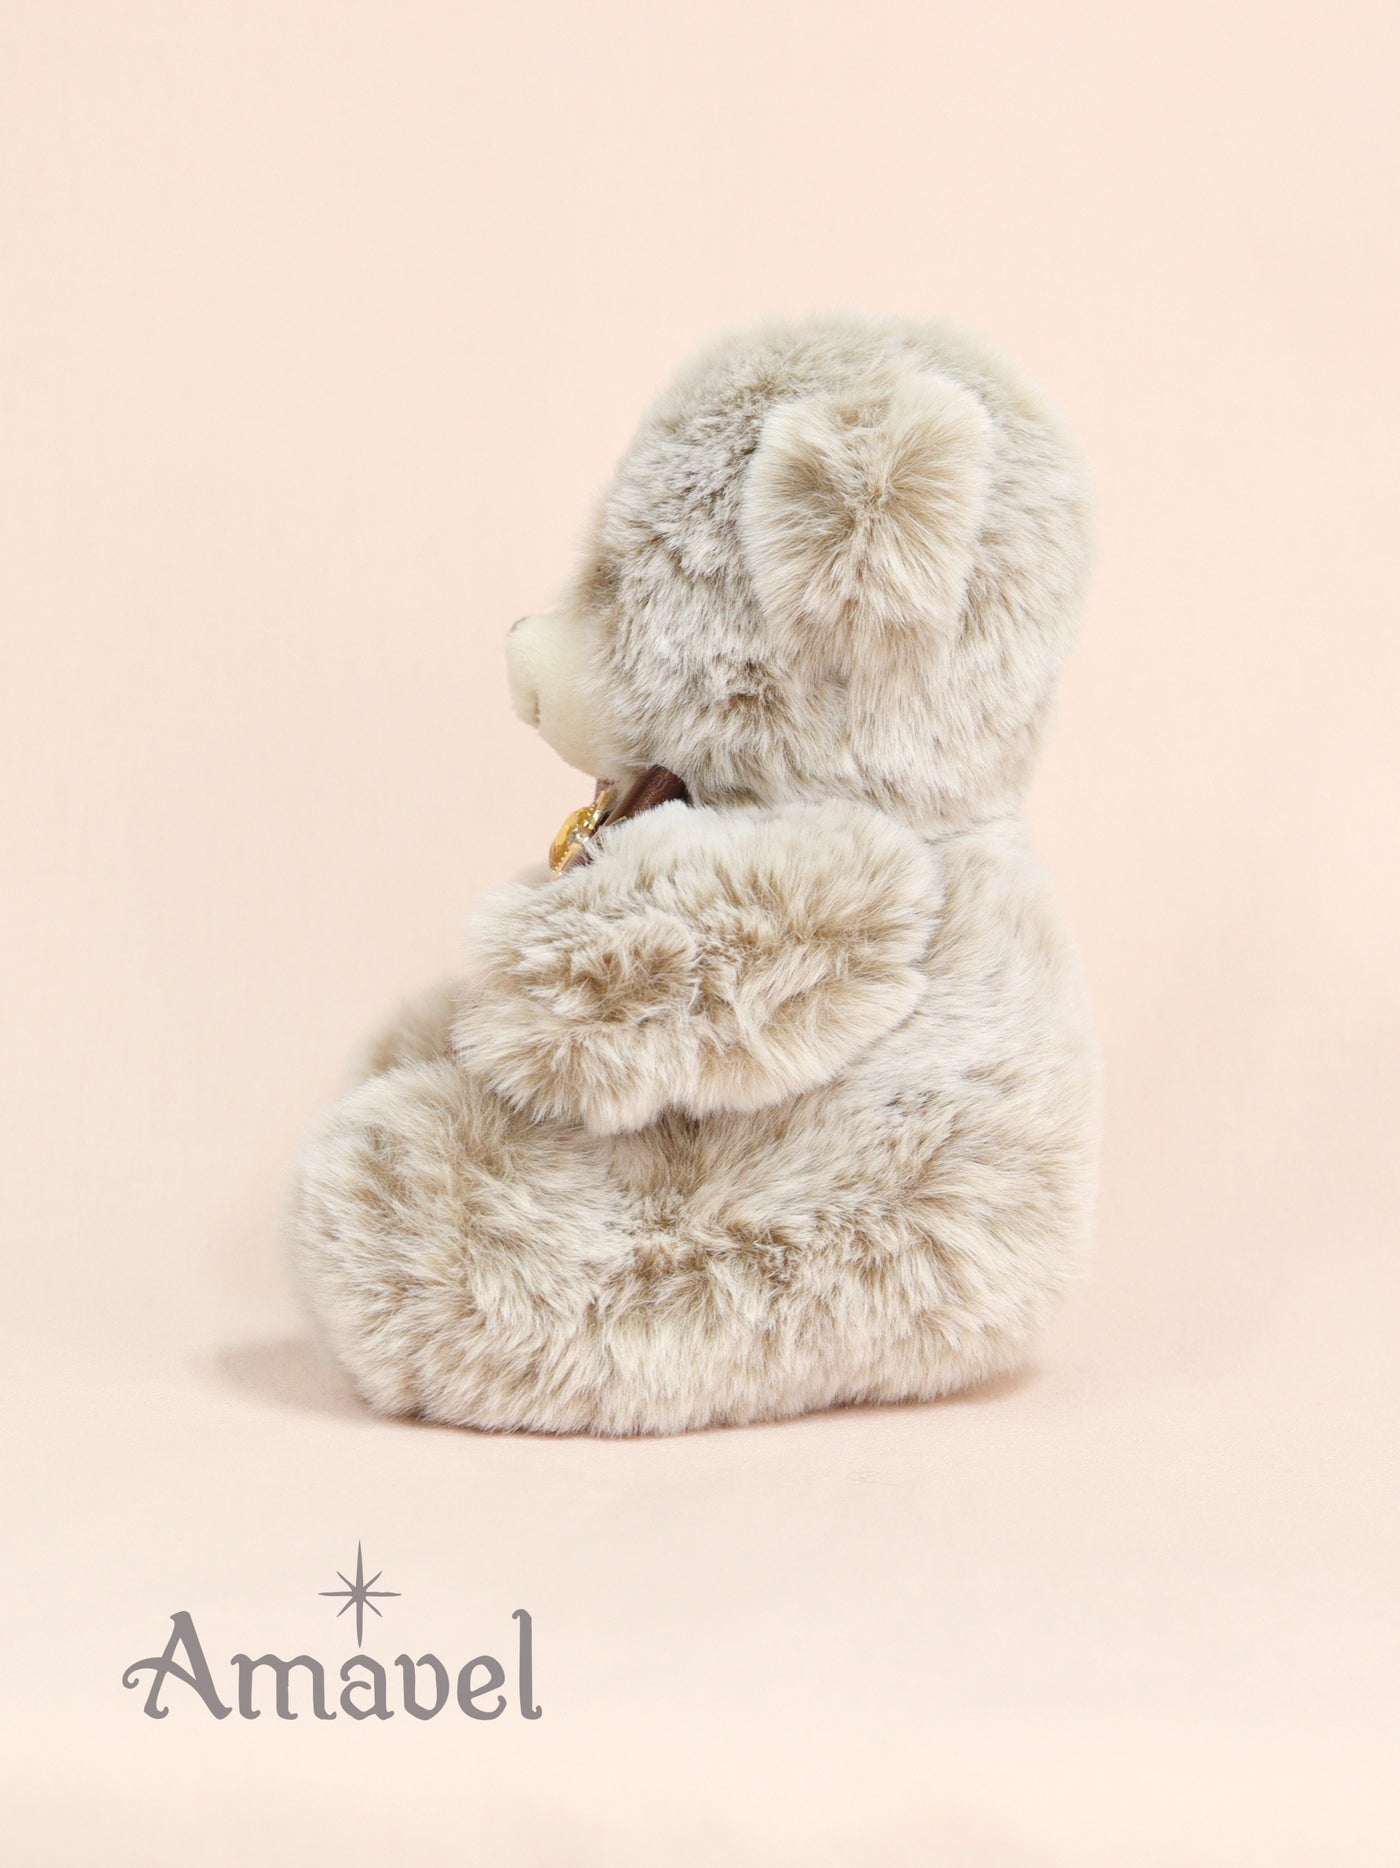 Stuffed toy by Patisserie Porte Bonheur